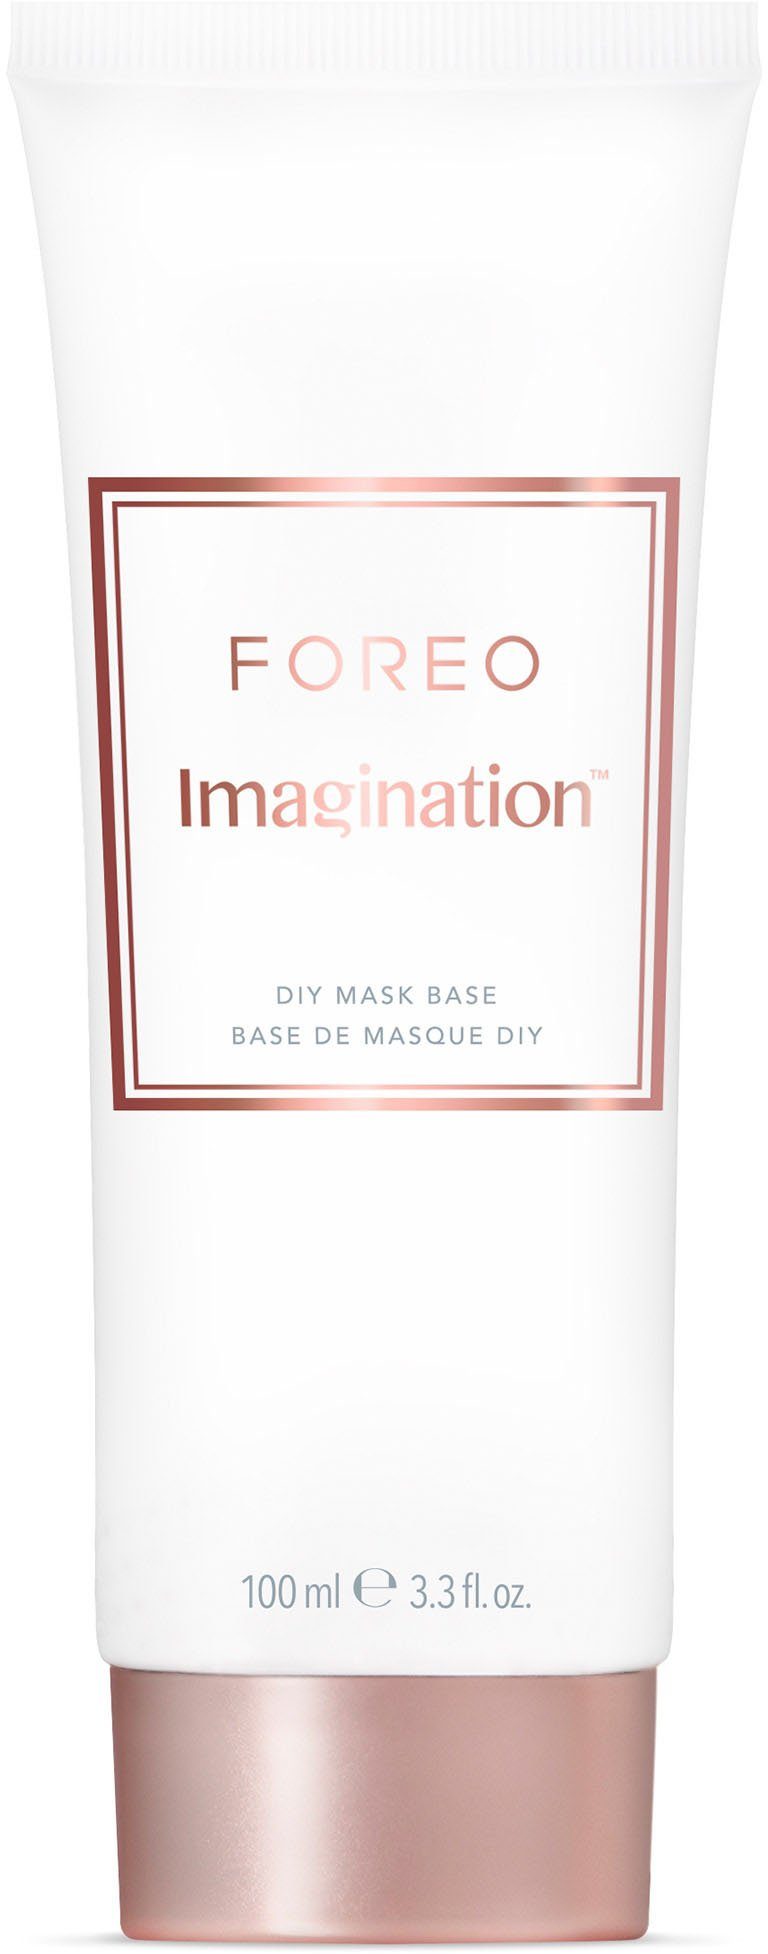 Base Gesichtsmaske 100ml DIY Mask Imagination FOREO